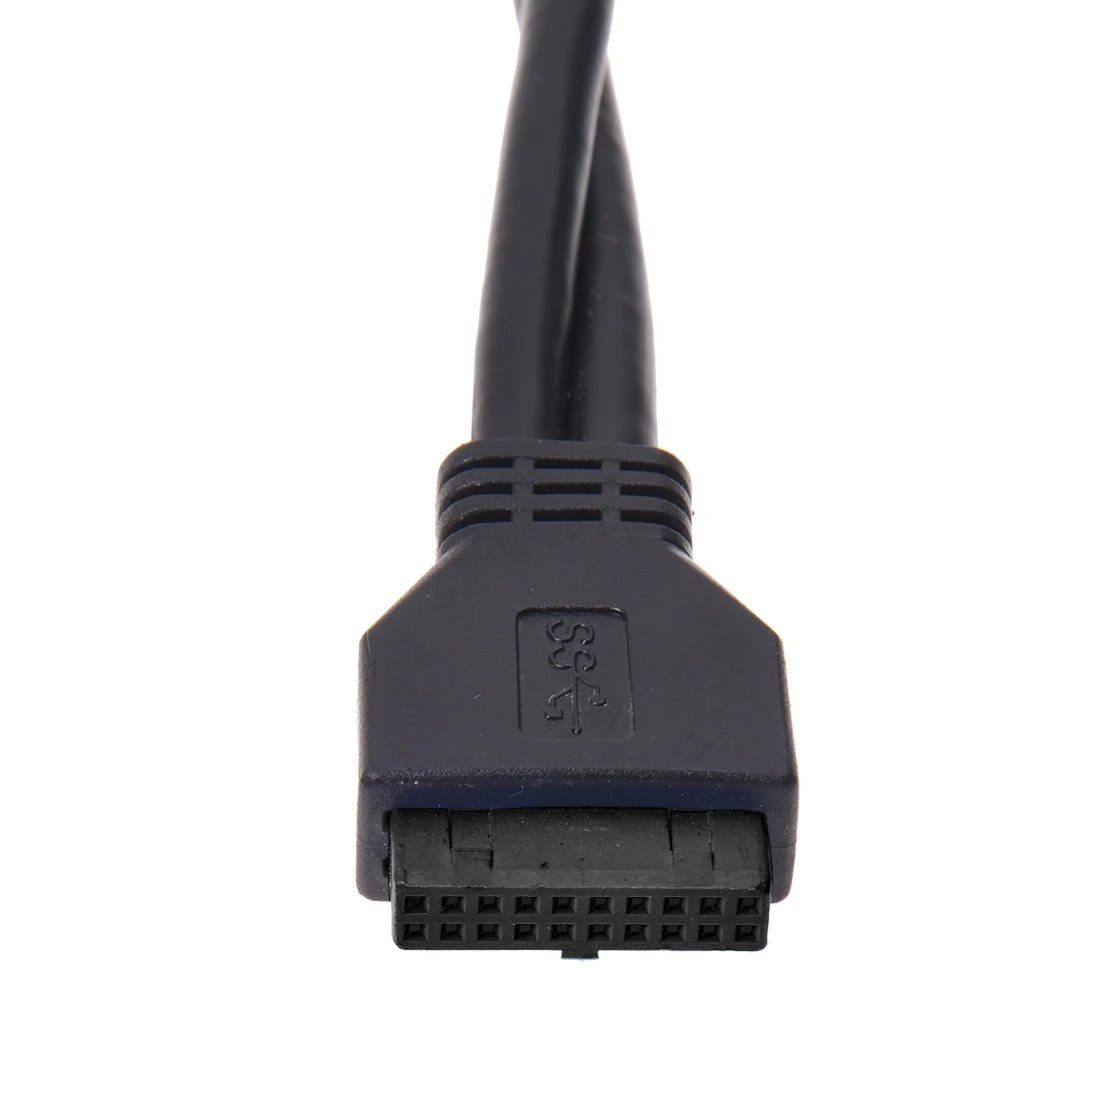 Superspeed USB 3,0 20 Pin 2 порта Передняя панель флоппи-дисковый отсек концентратор кронштейн кабель